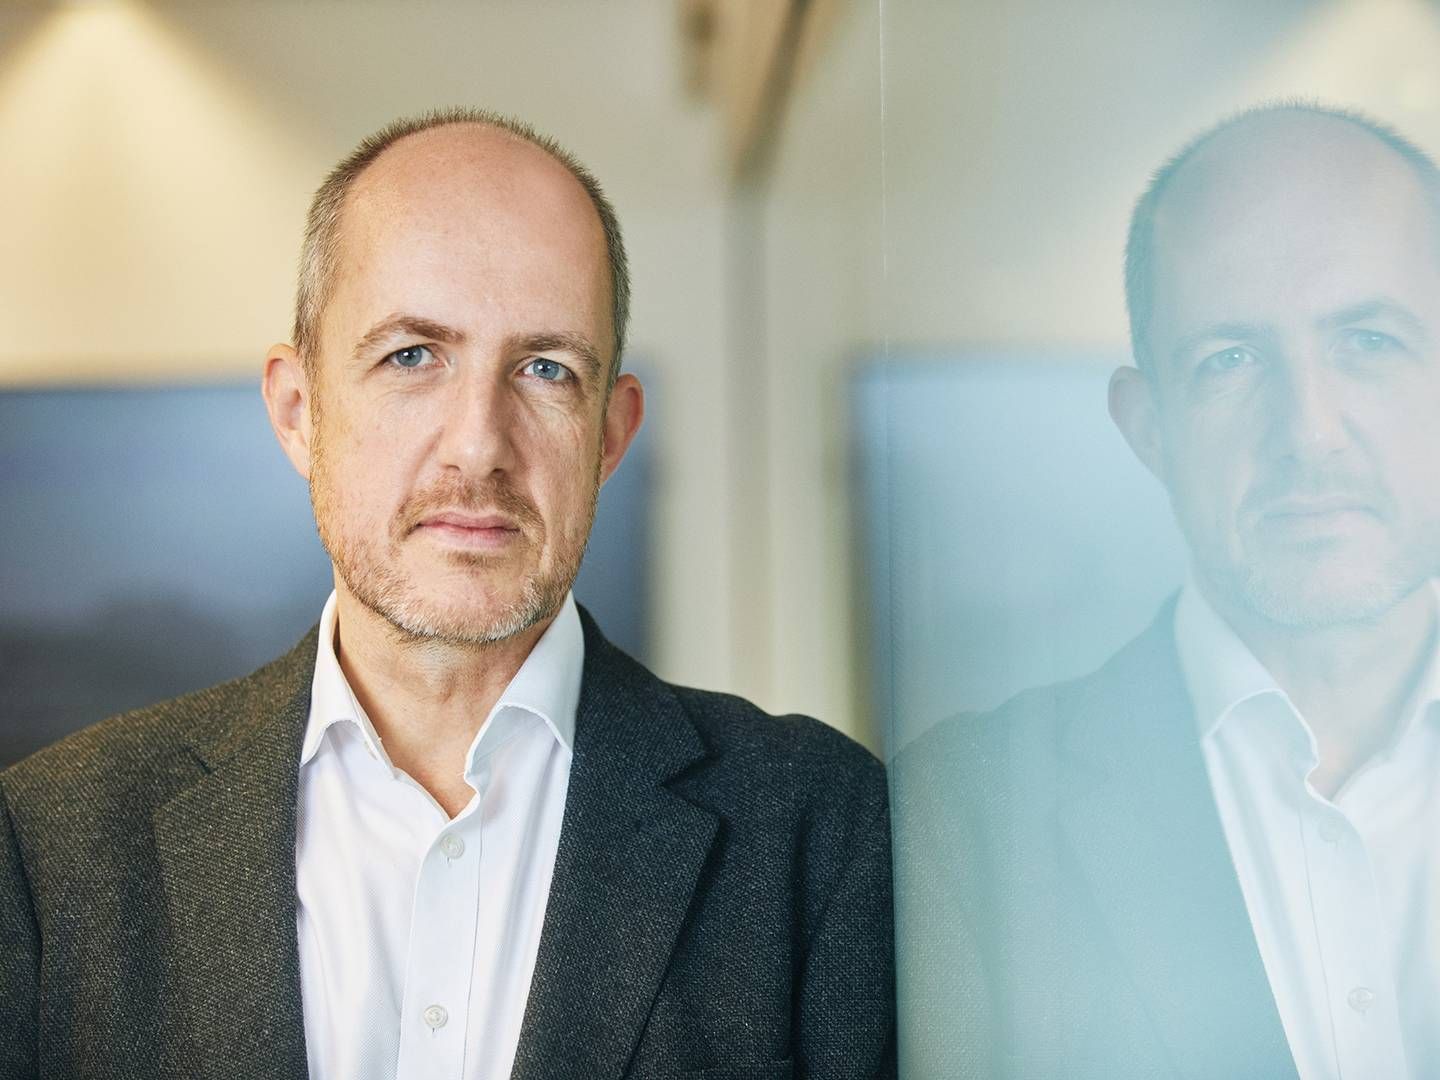 Før Claus Bunkenborg blev adm. direktør for Mobilepay, arbejdede han en årrække i forskellige stillinger i Danske Bank. | Foto: Mobilepay/pr